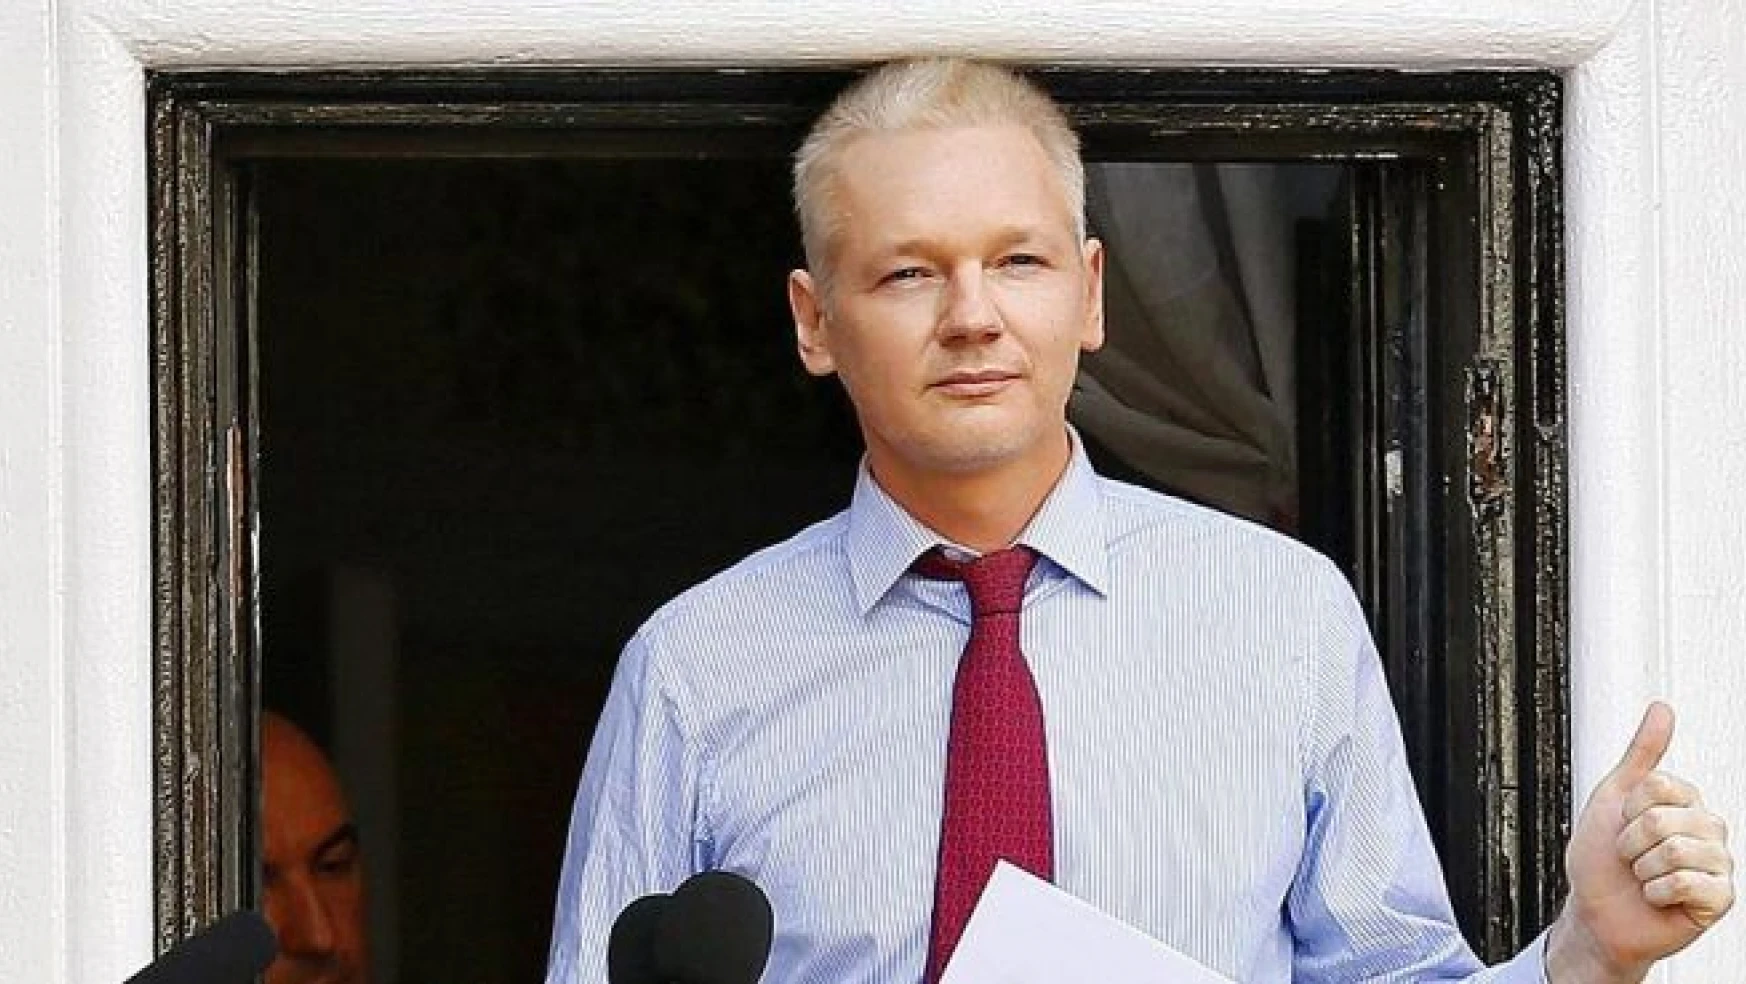 Assange'ın sorgulanması için Ekvador'a izin çıkmadı